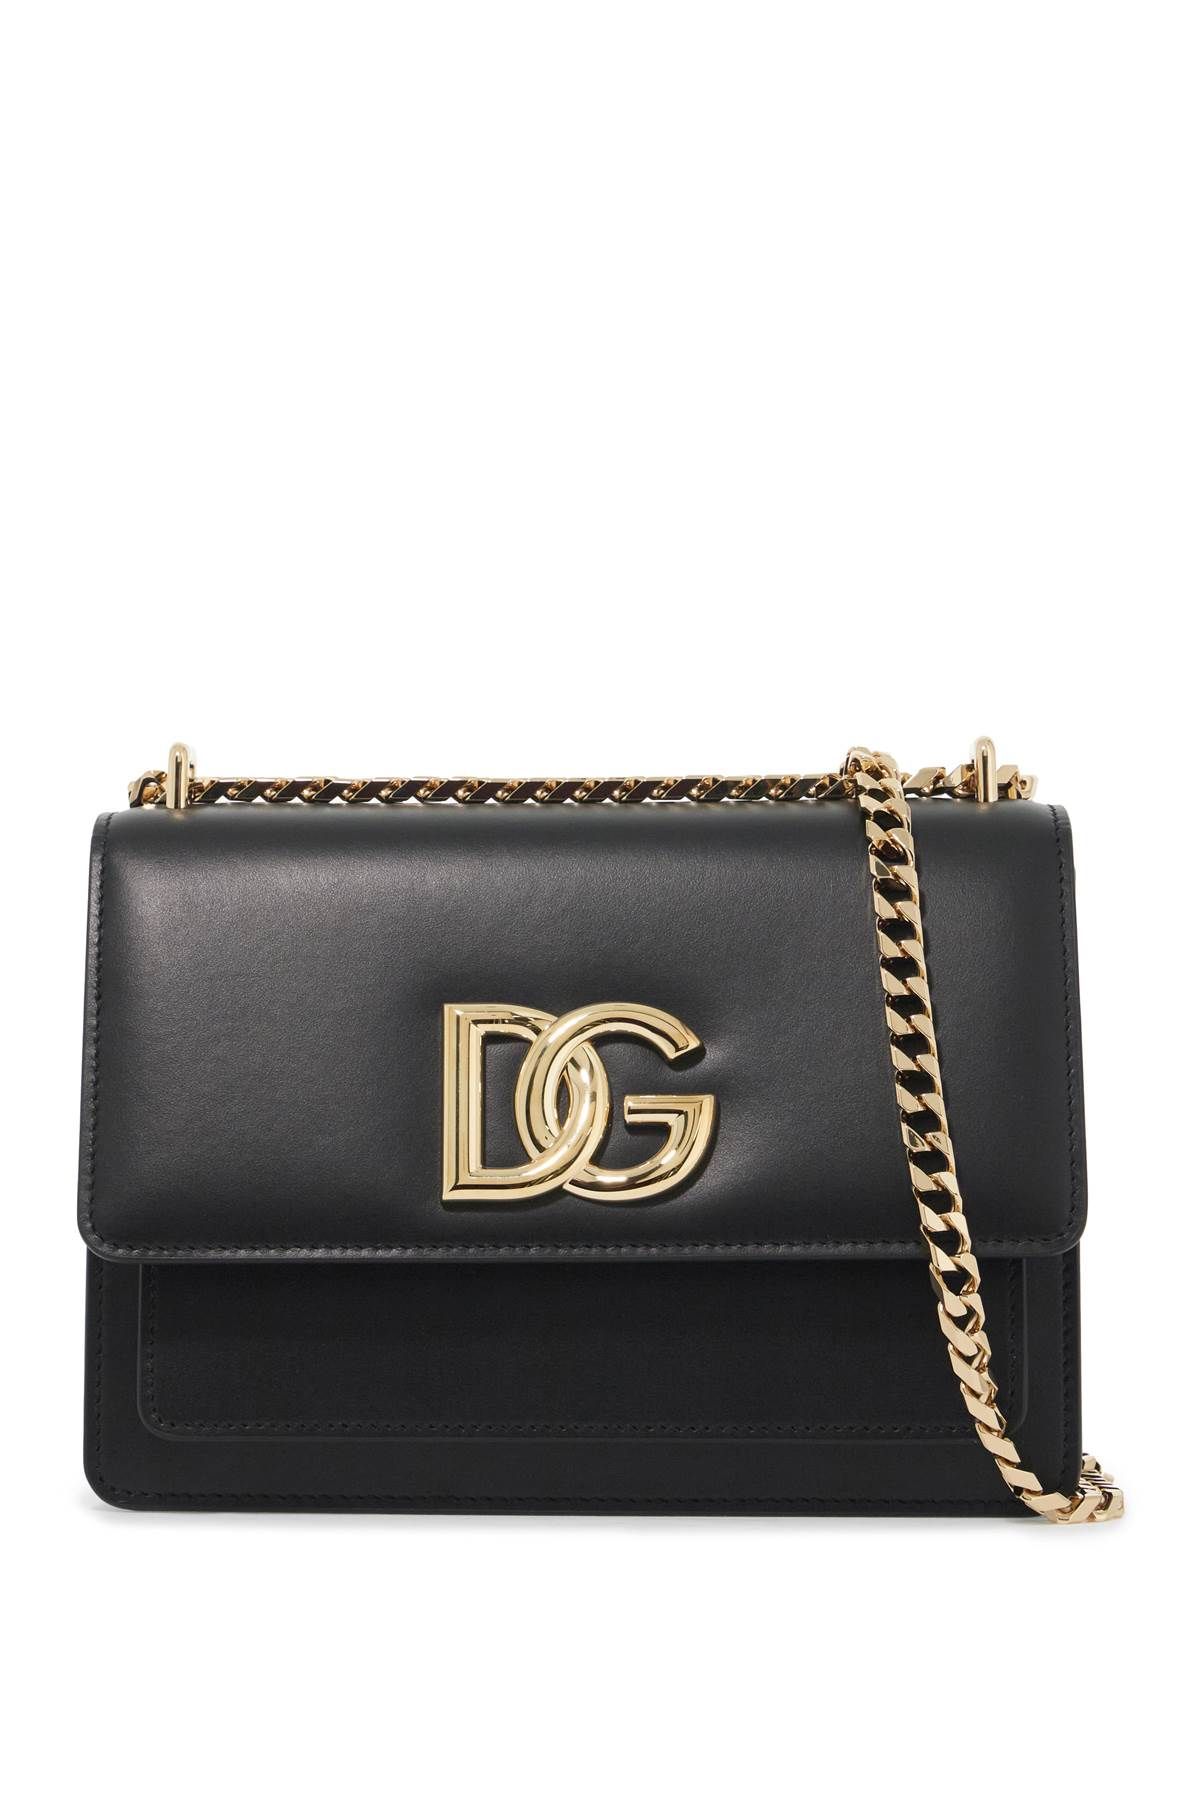 Dolce & Gabbana DOLCE & GABBANA shoulder bag 3.